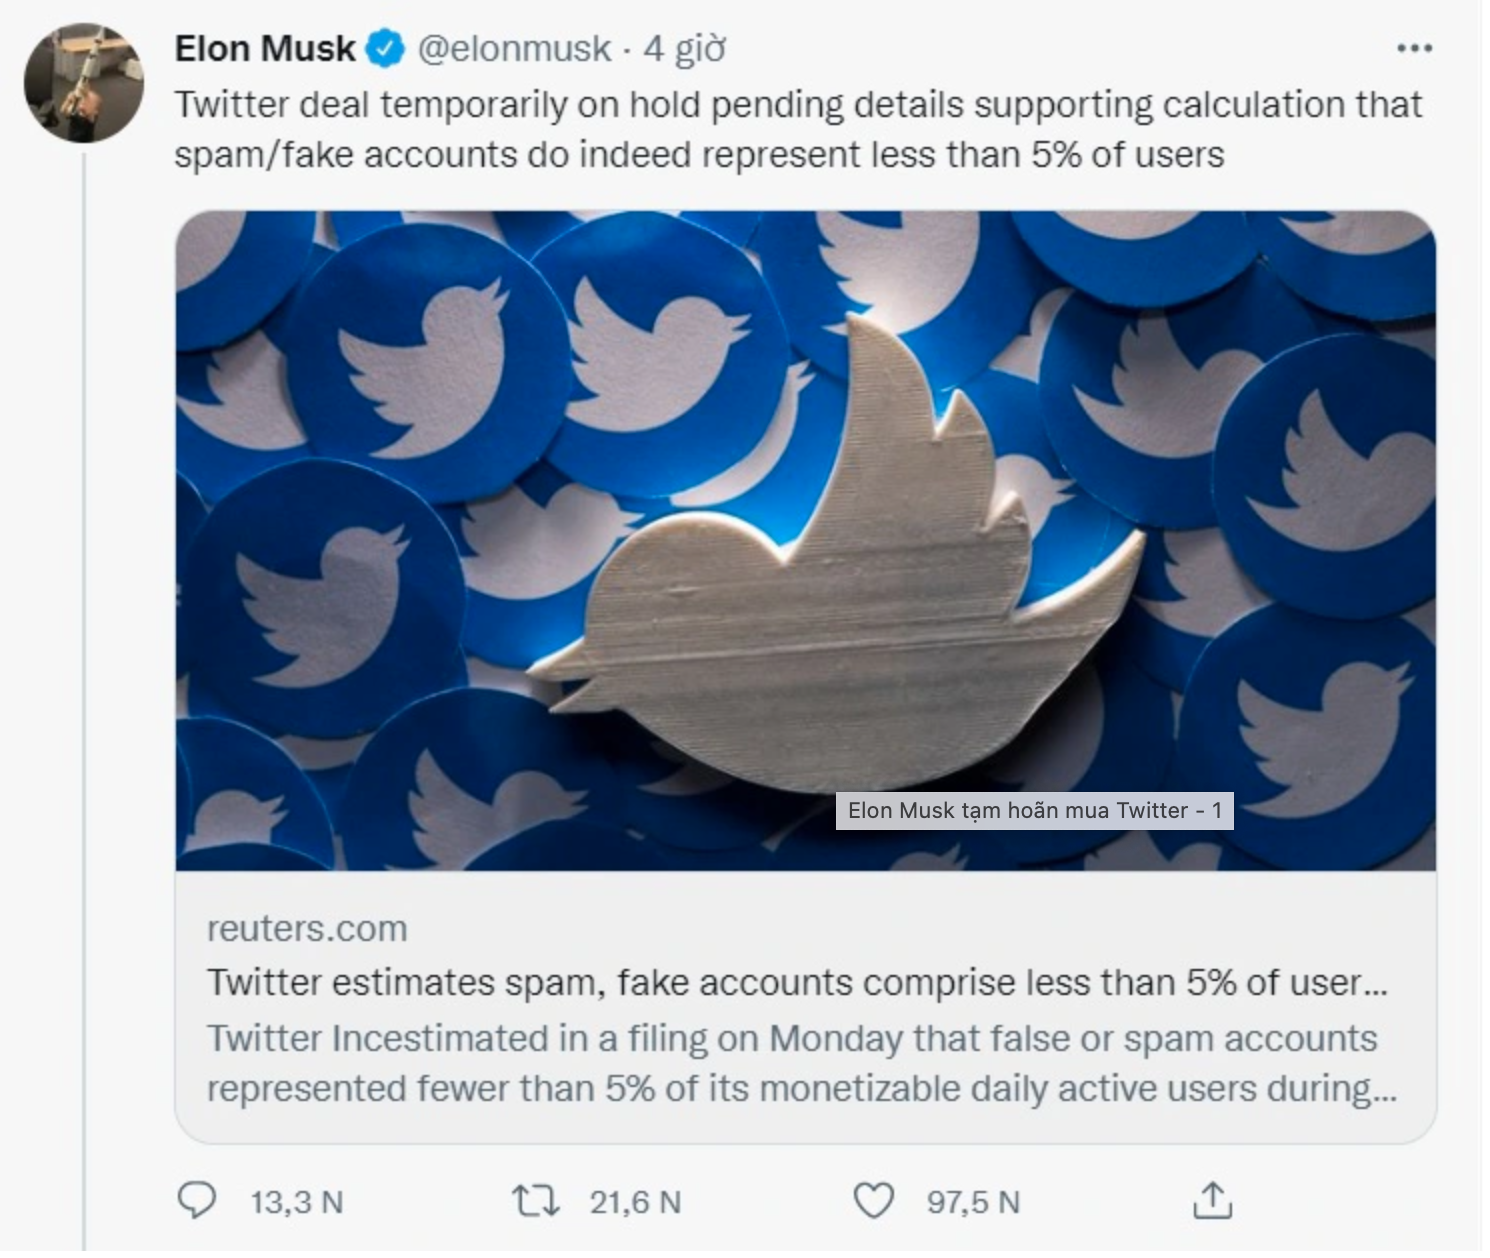 Thông báo hoãn mua Twitter được Elon Musk đăng tải không lâu trước khi ông chính thức huỷ bỏ thương vụ. Ảnh chụp màn hình